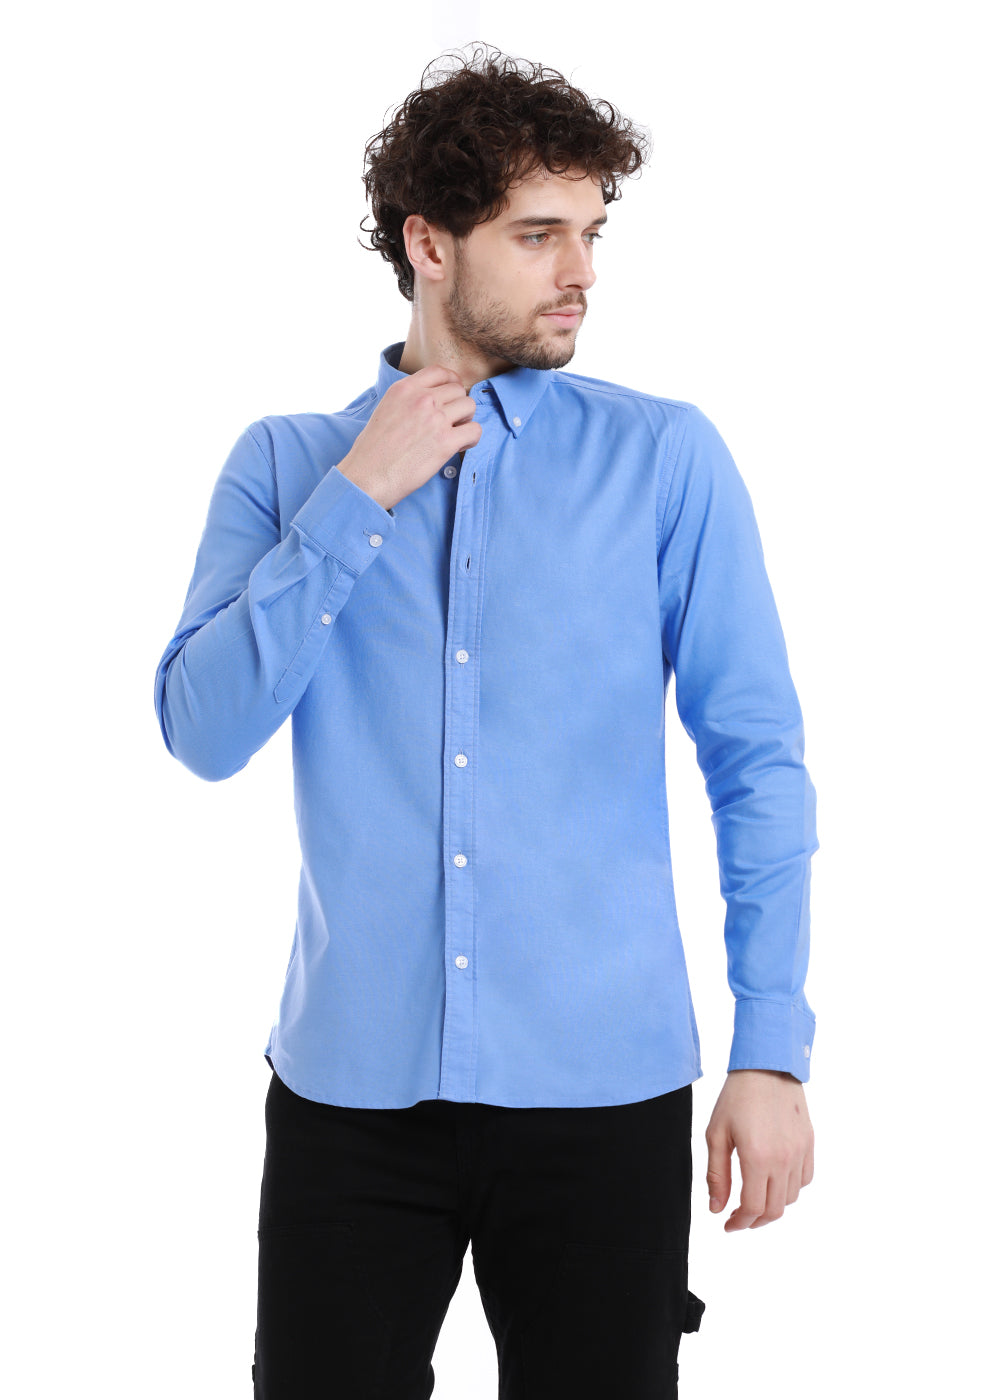 Light Cobalt Blue Oxford Shirt